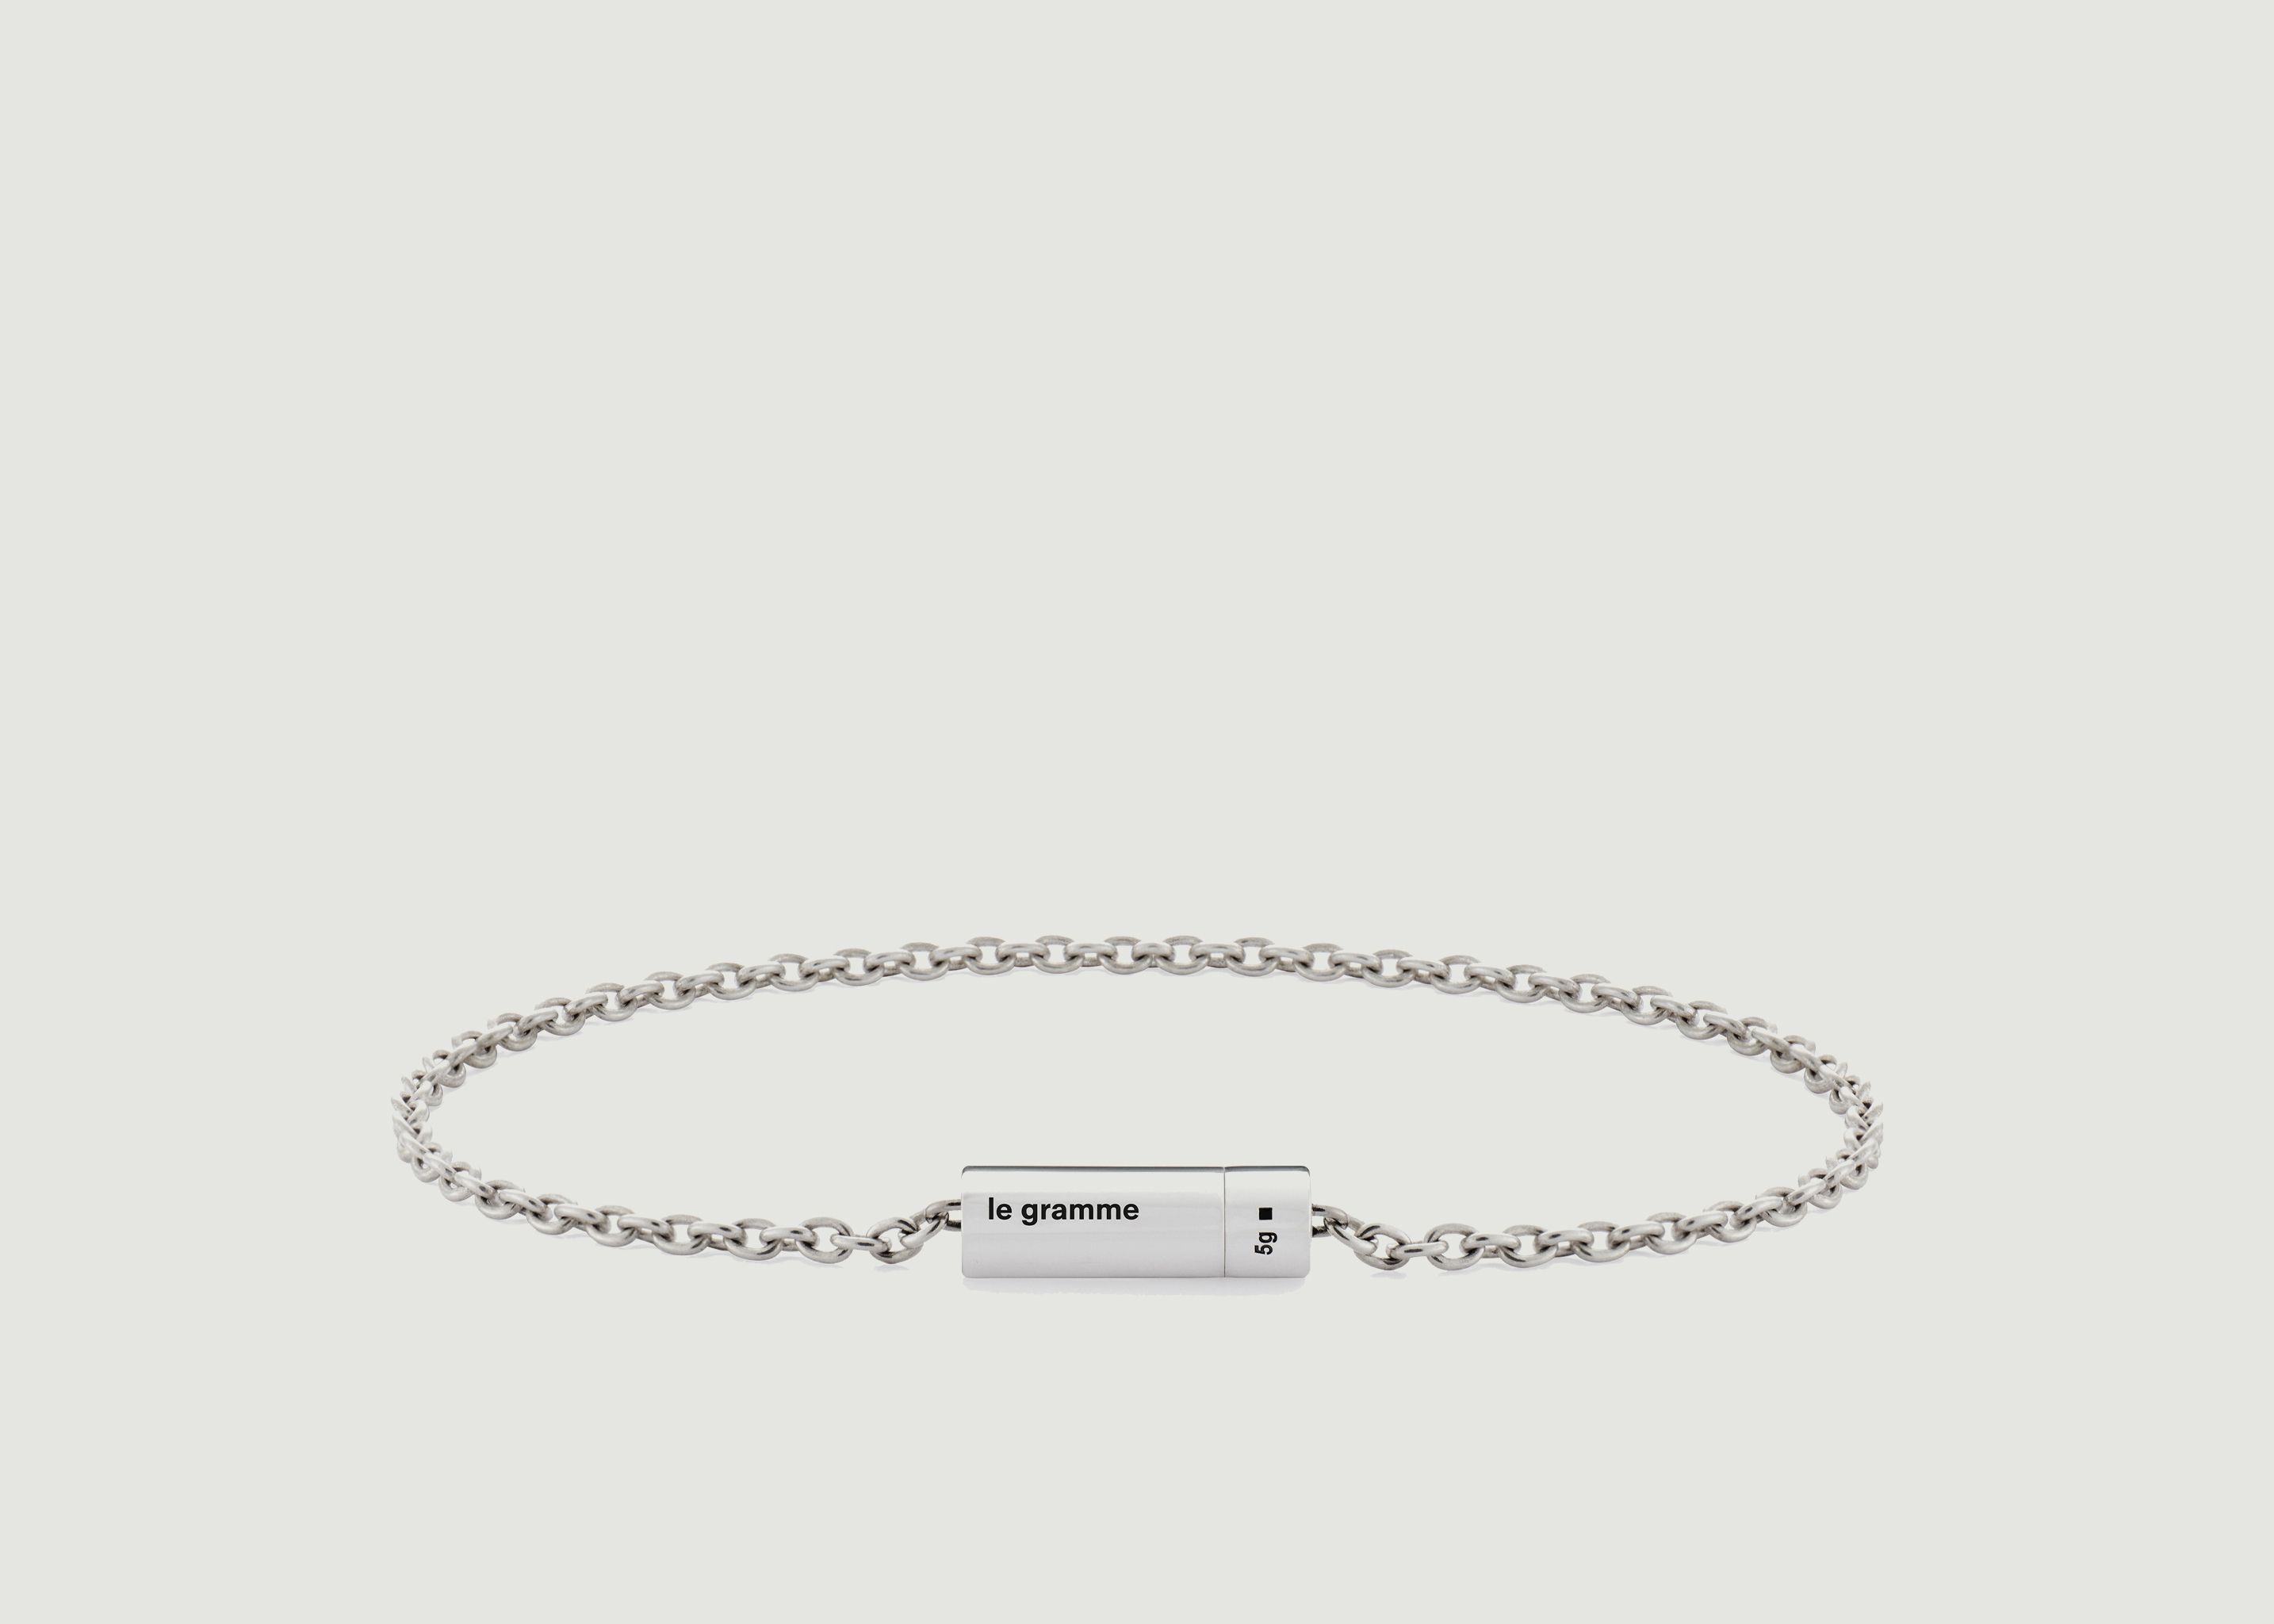 7g silver chain bracelet - Le Gramme